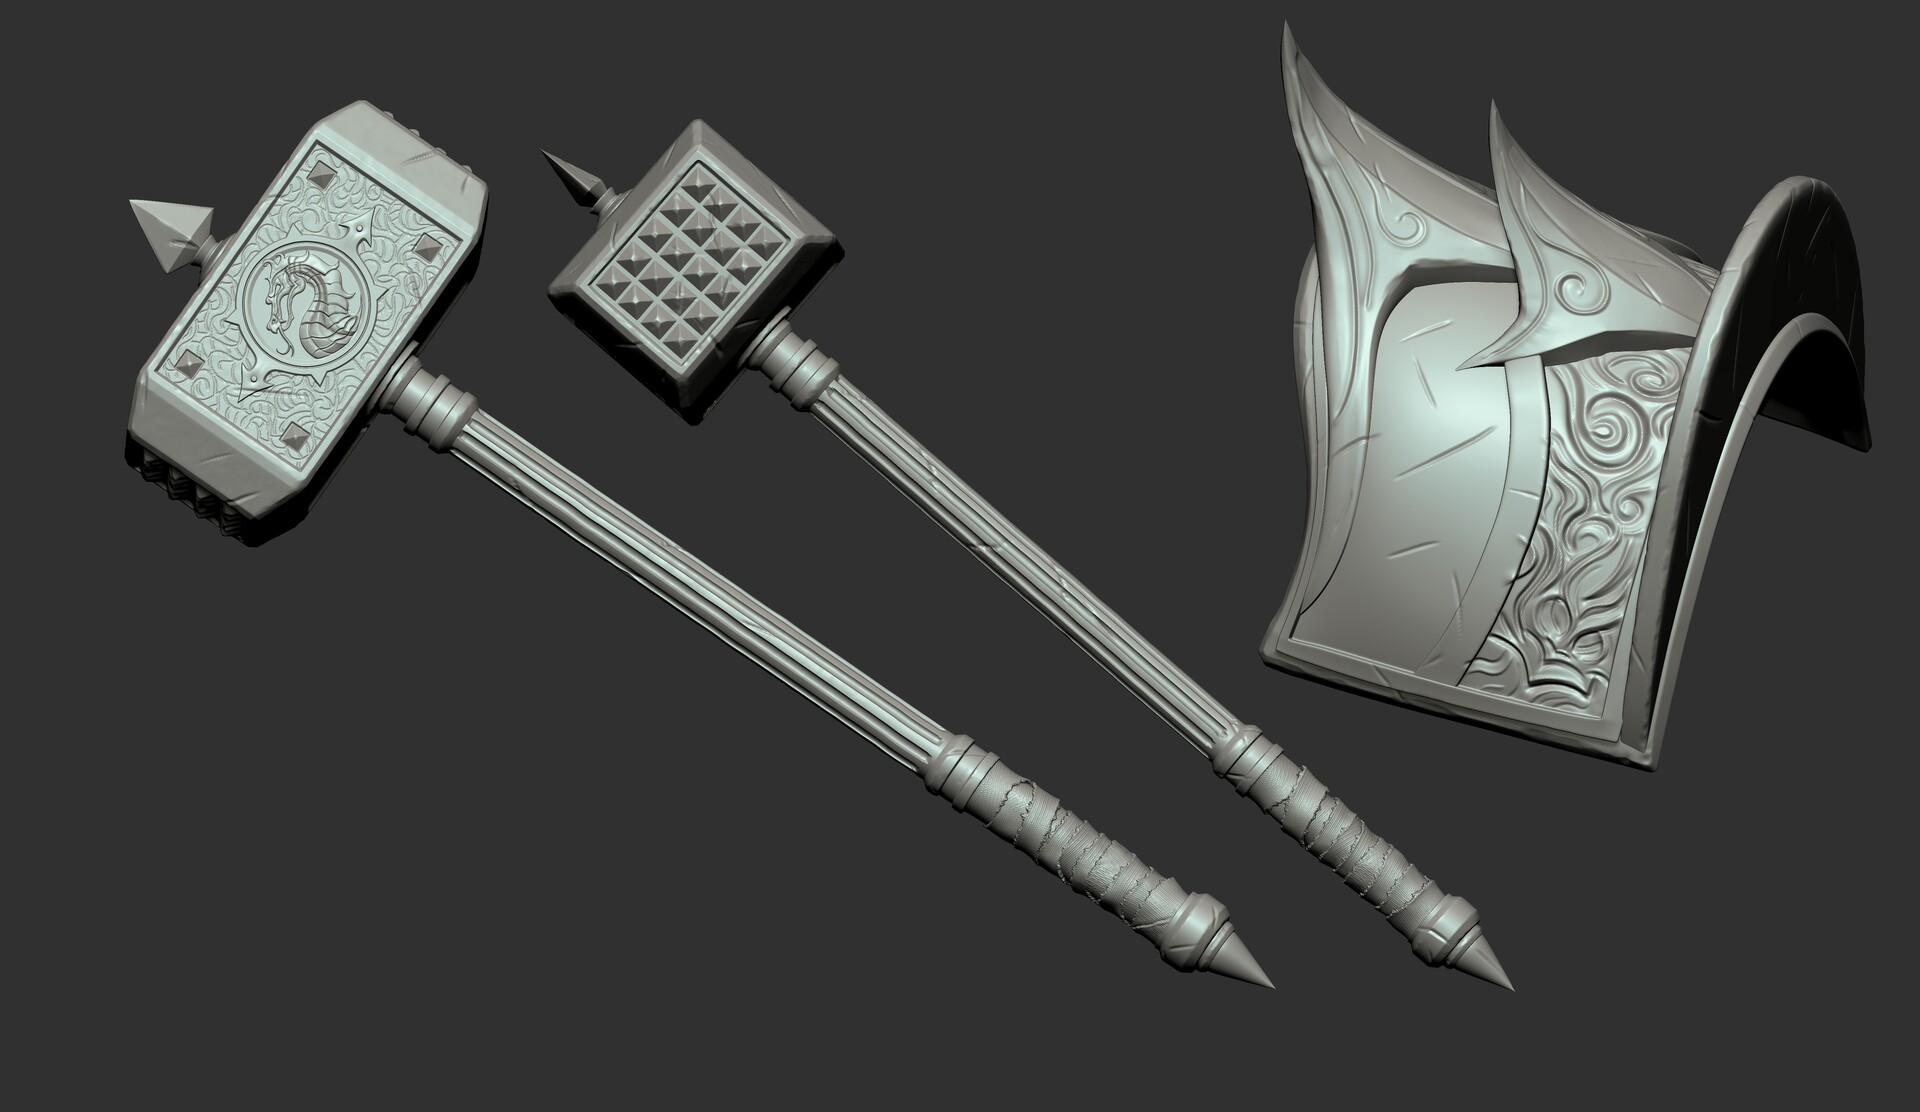 Hammer Shao Kahn MK11 - Version 6 - 3D model 3D printable